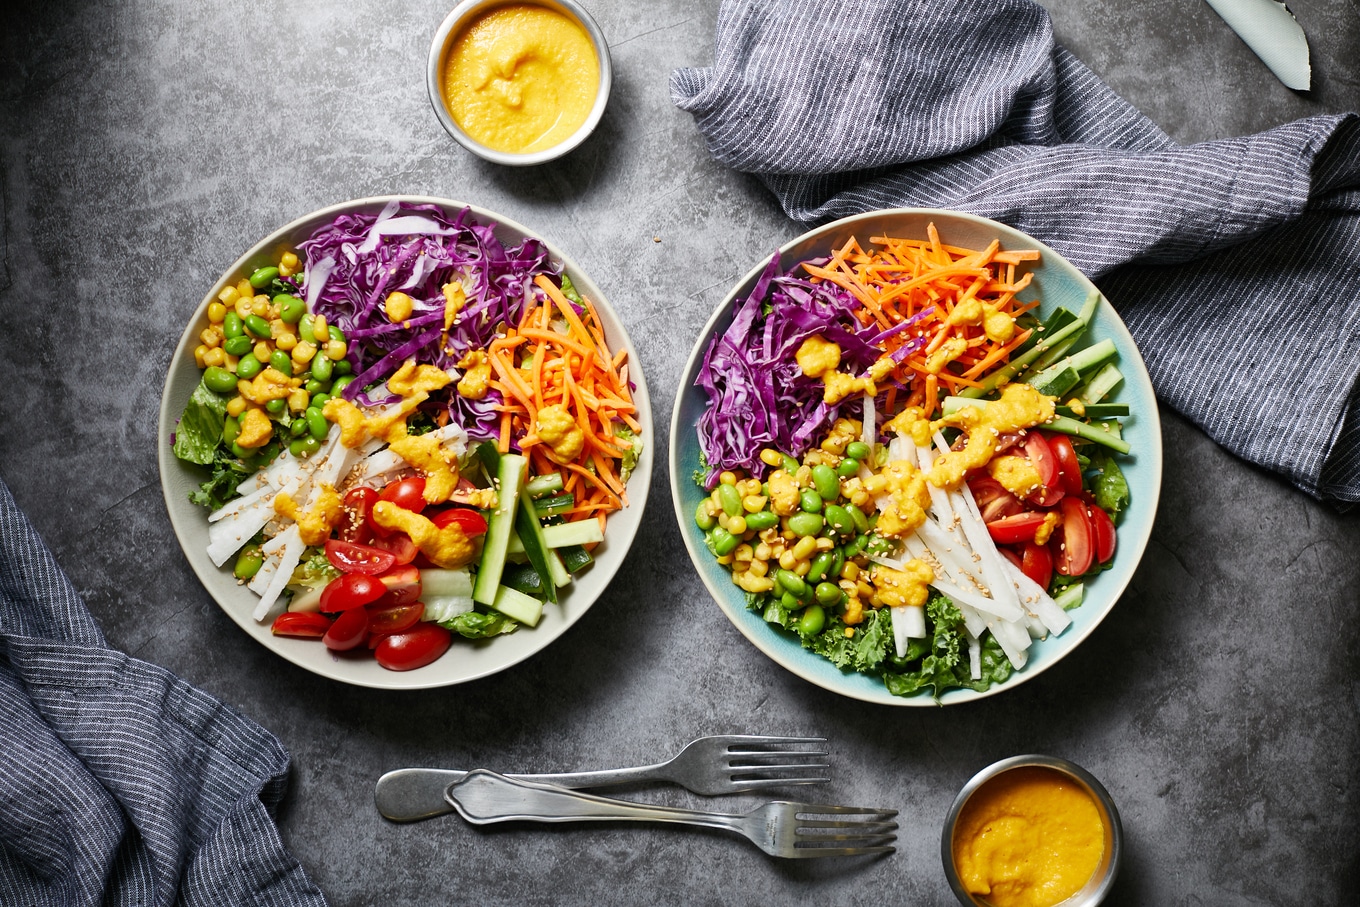 Vegetables, rainbow, salad